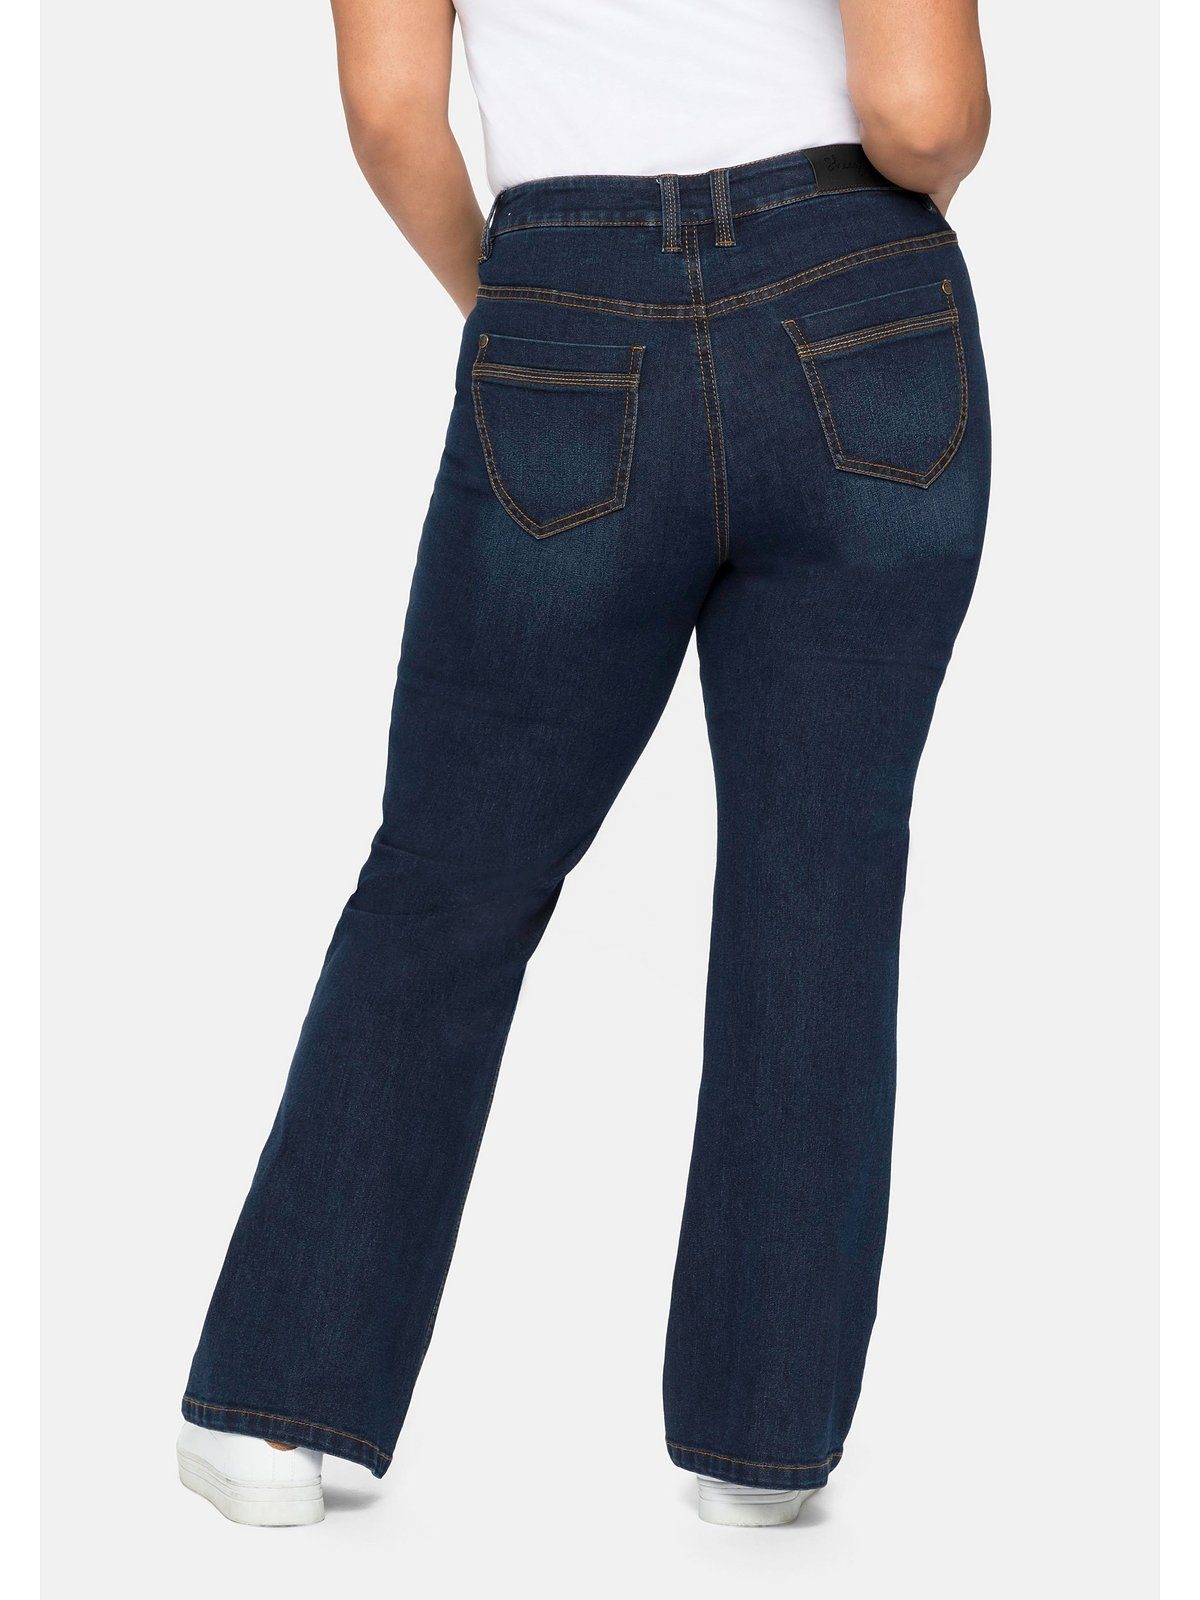 Bootcut-Jeans Sheego verstellbarem mit Große Größen Bund